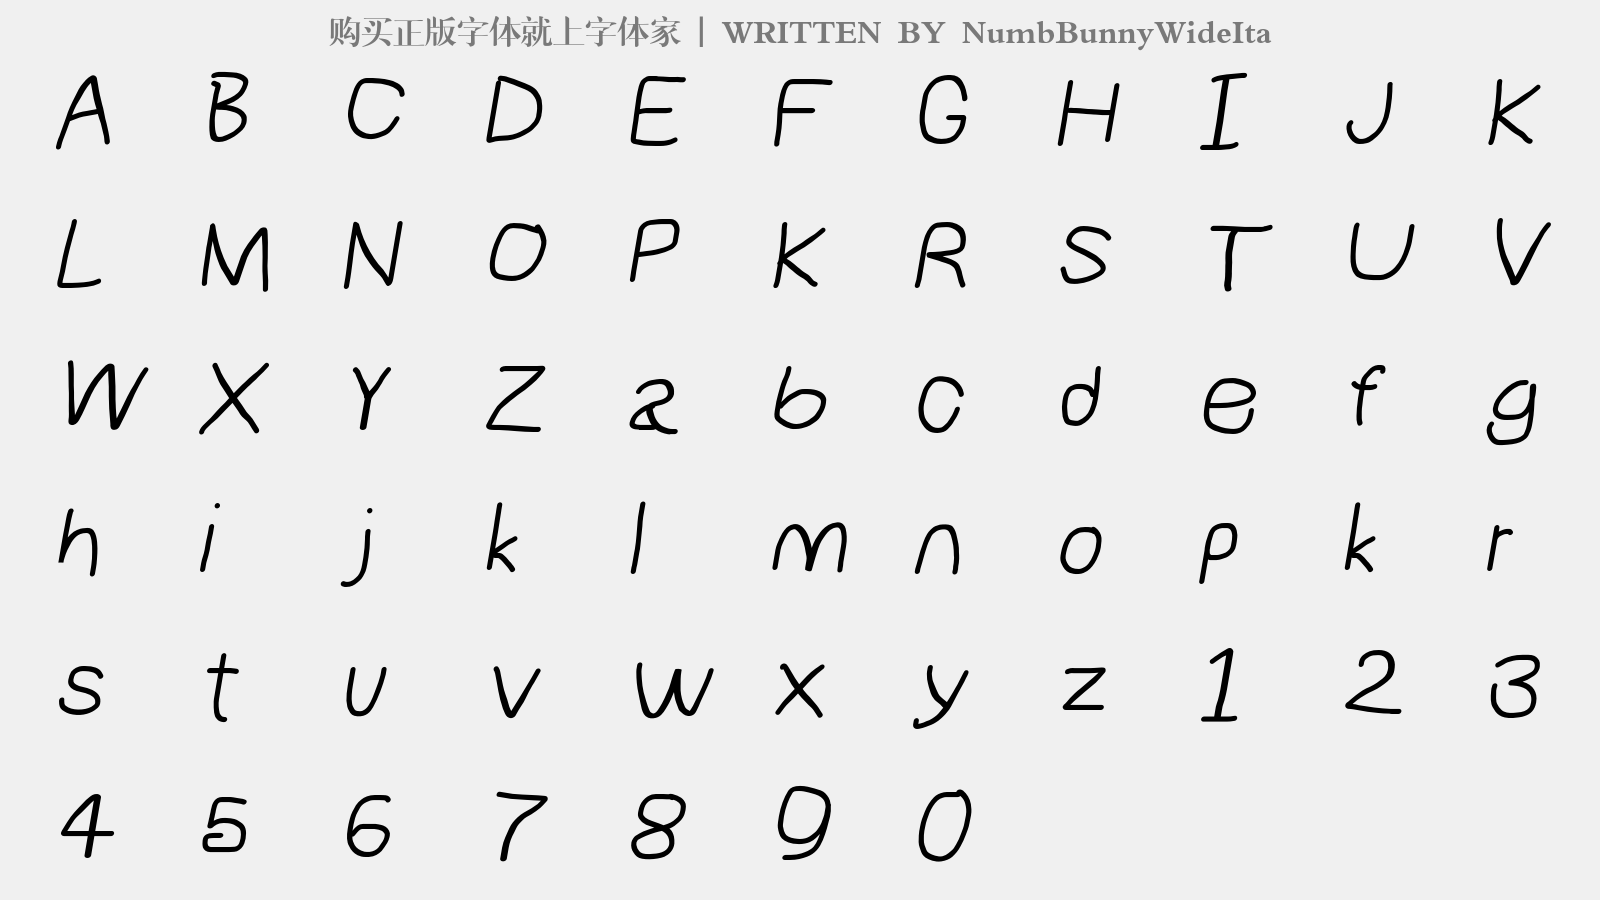 NumbBunnyWideIta - 大写字母/小写字母/数字